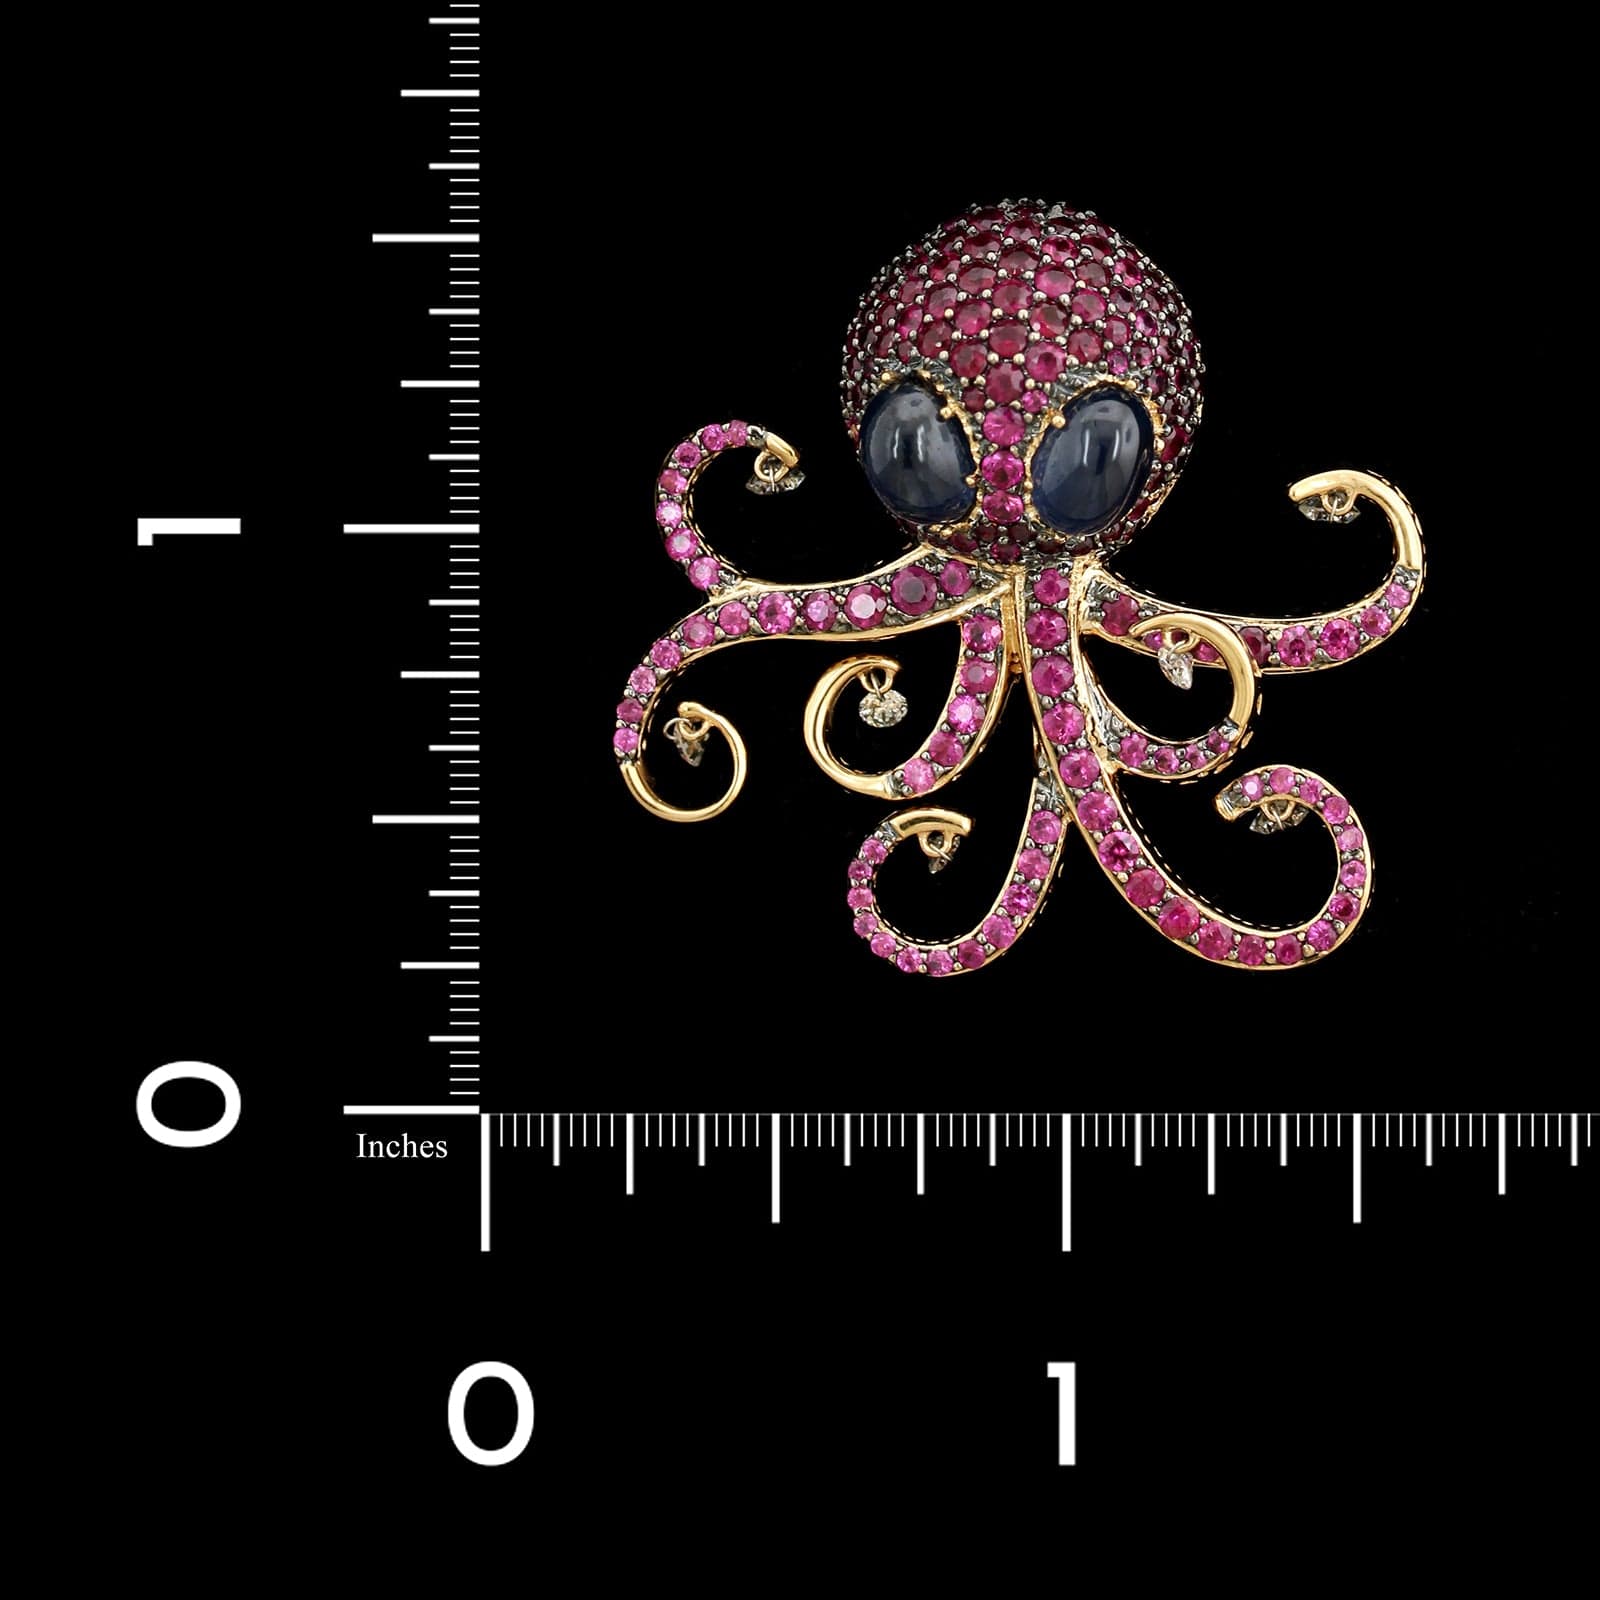 Ponte Vecchio Gioiello 18K Rose Gold Estate Ruby Octopus Pin Pendant